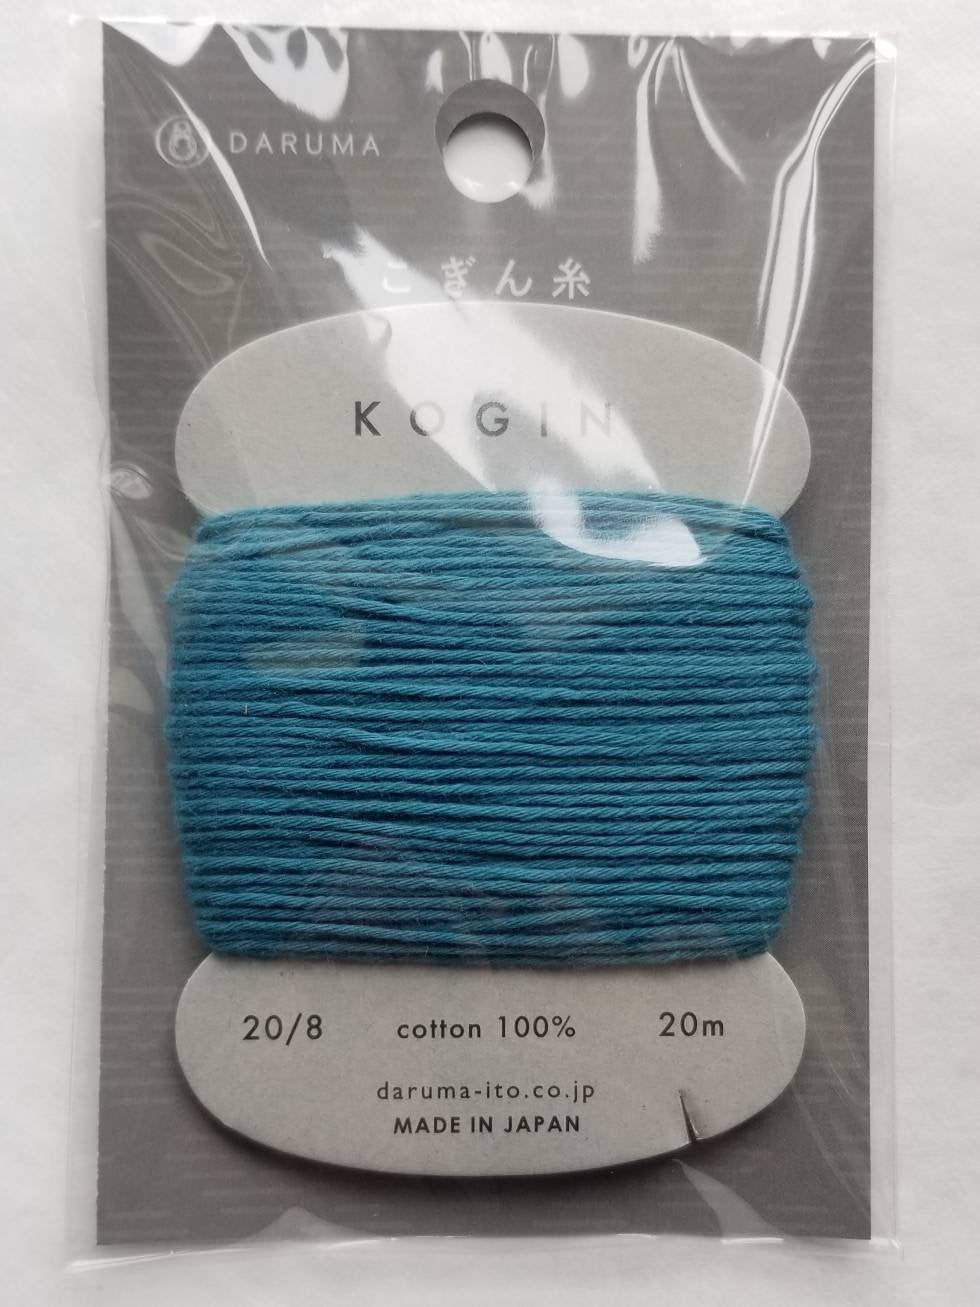 Daruma #5 TEAL Japanese Cotton KOGIN thread 20 meter skein 20/8